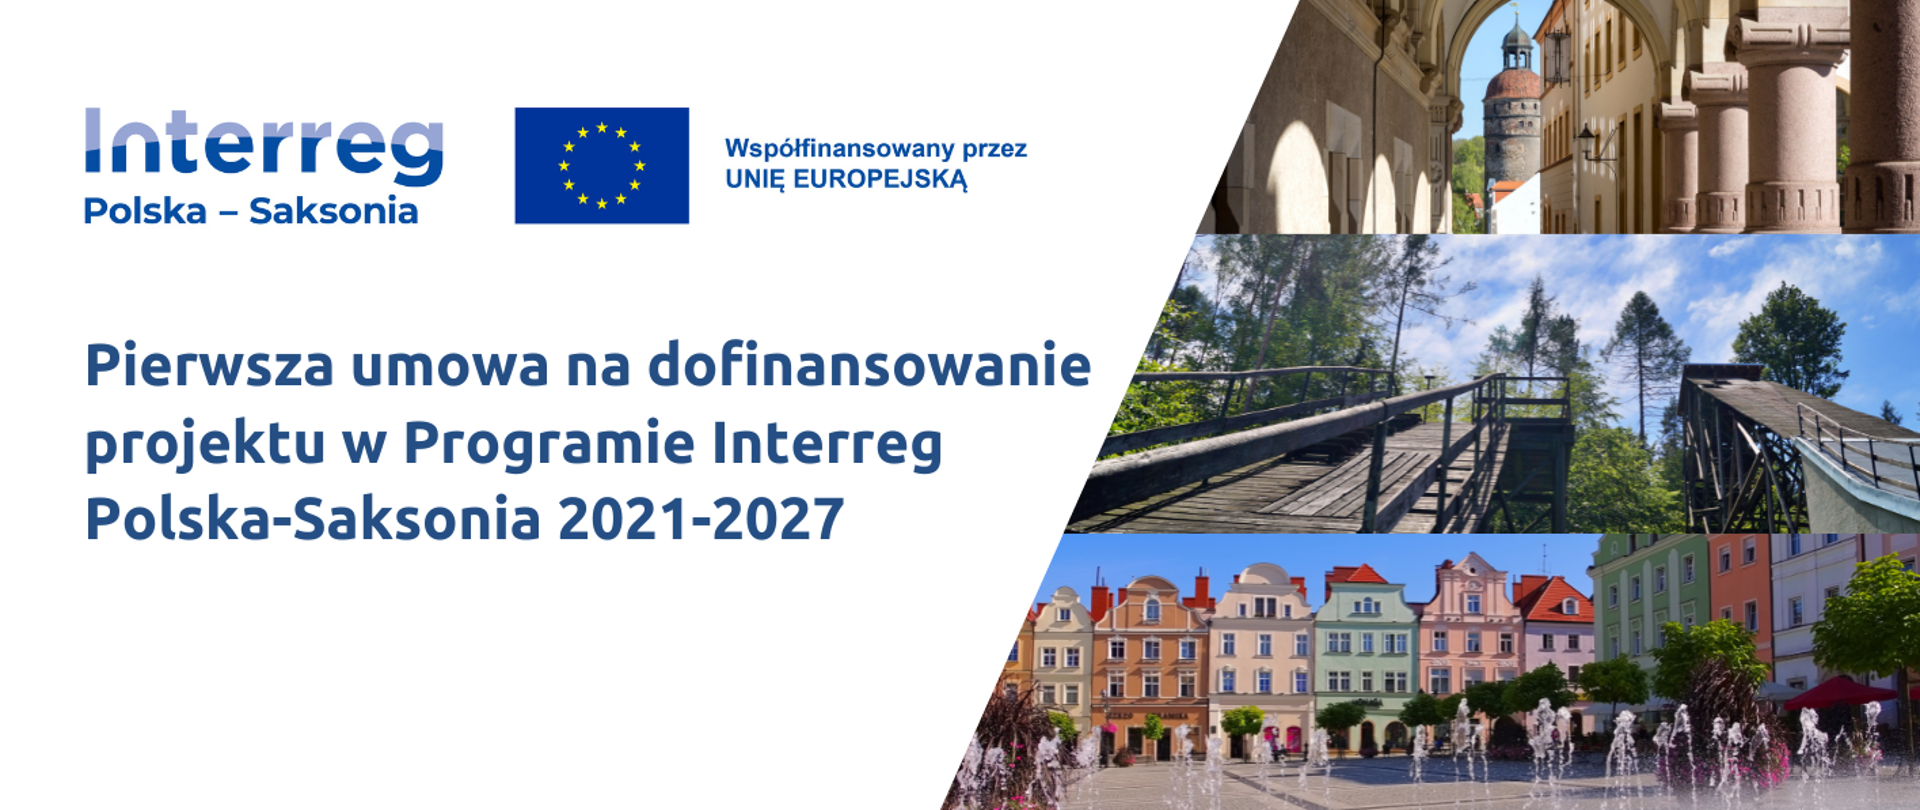 Podpisaliśmy pierwszą umowę o dofinansowanie projektu z Interreg 2021-2027 